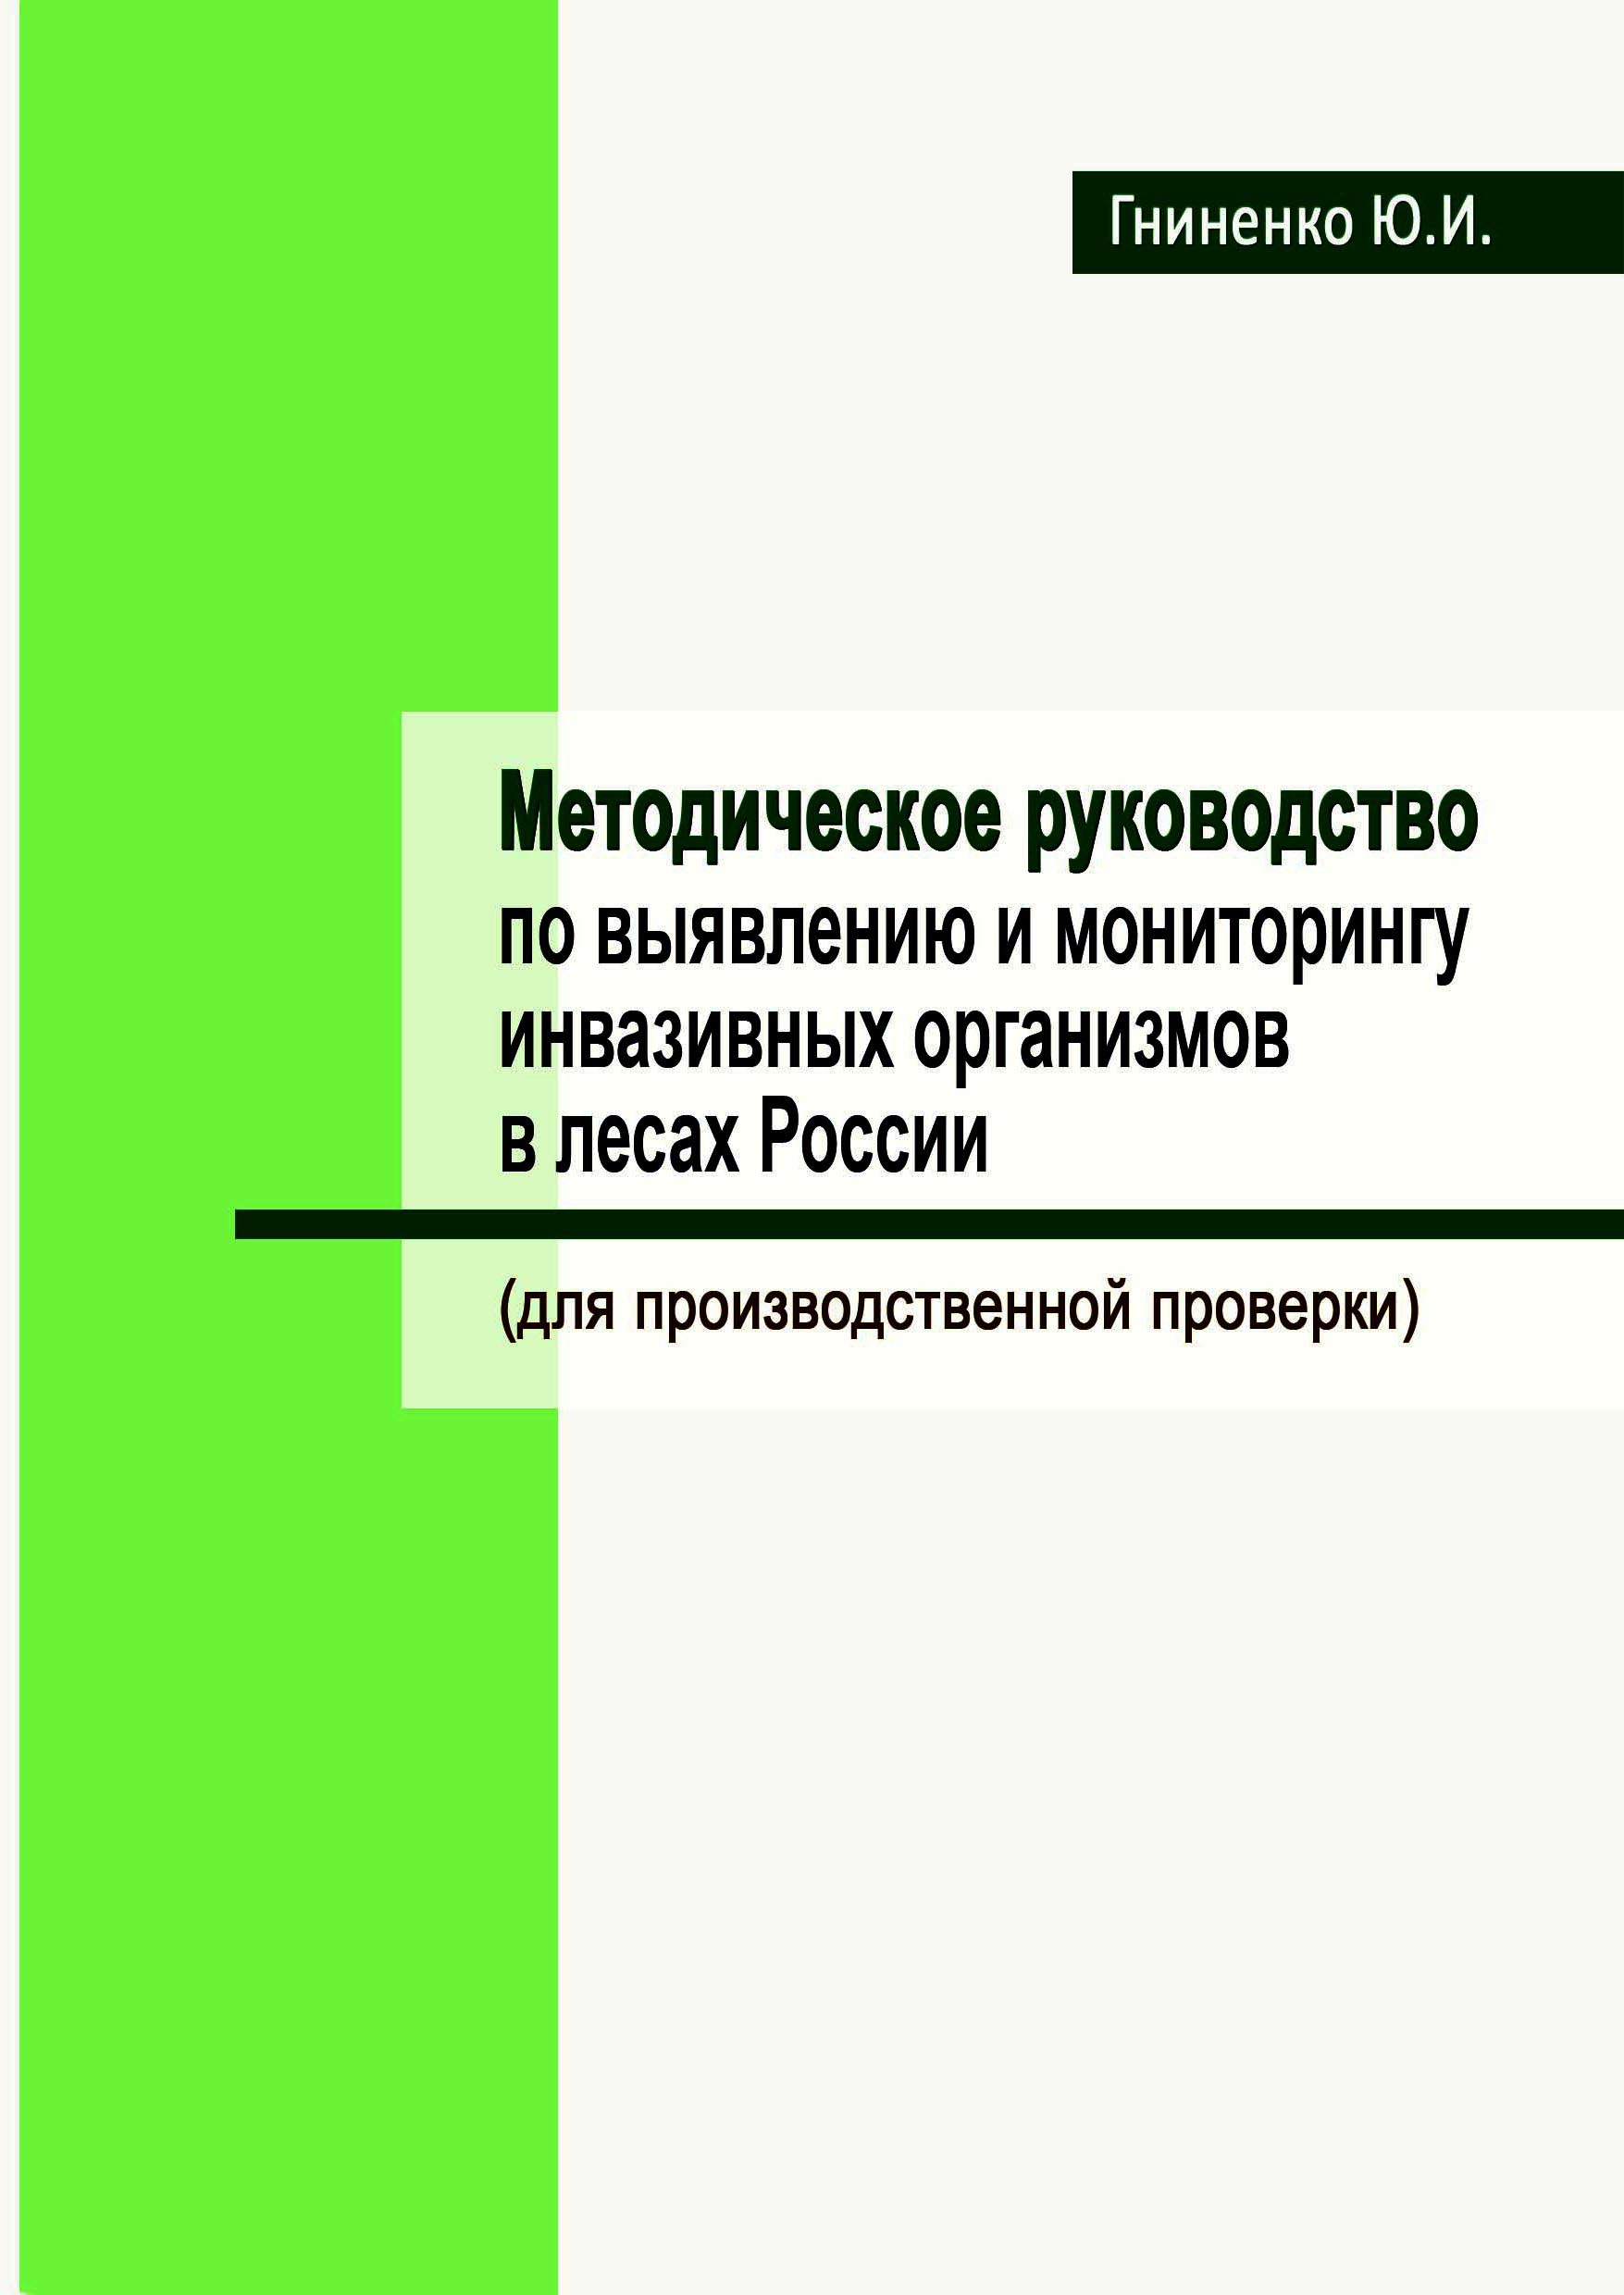 Методическое руководство по выявлению и мониторингу инвазивных организмов в лесах России